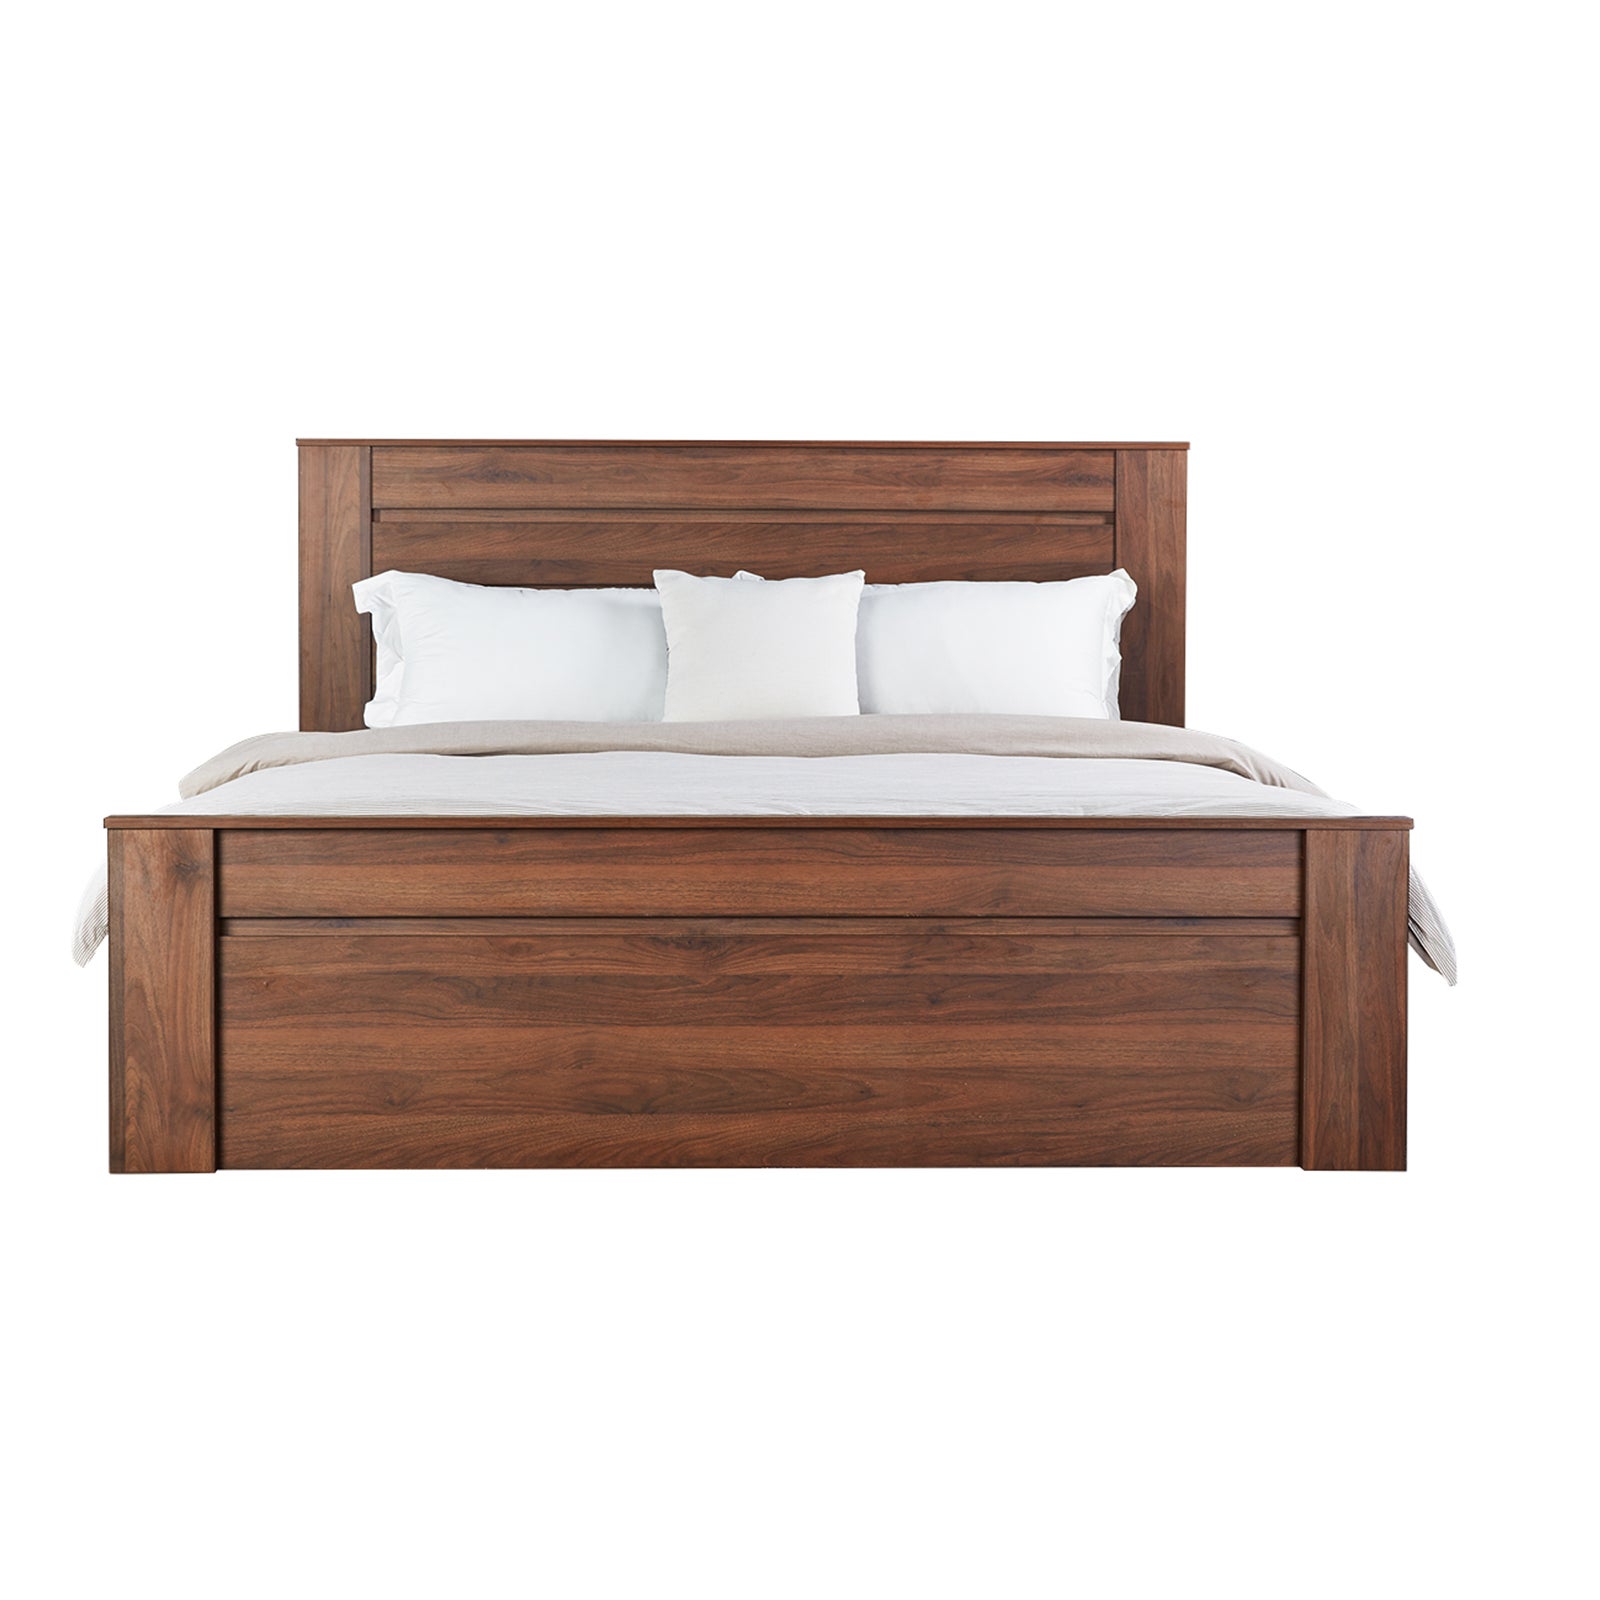 wood platform bed frame king